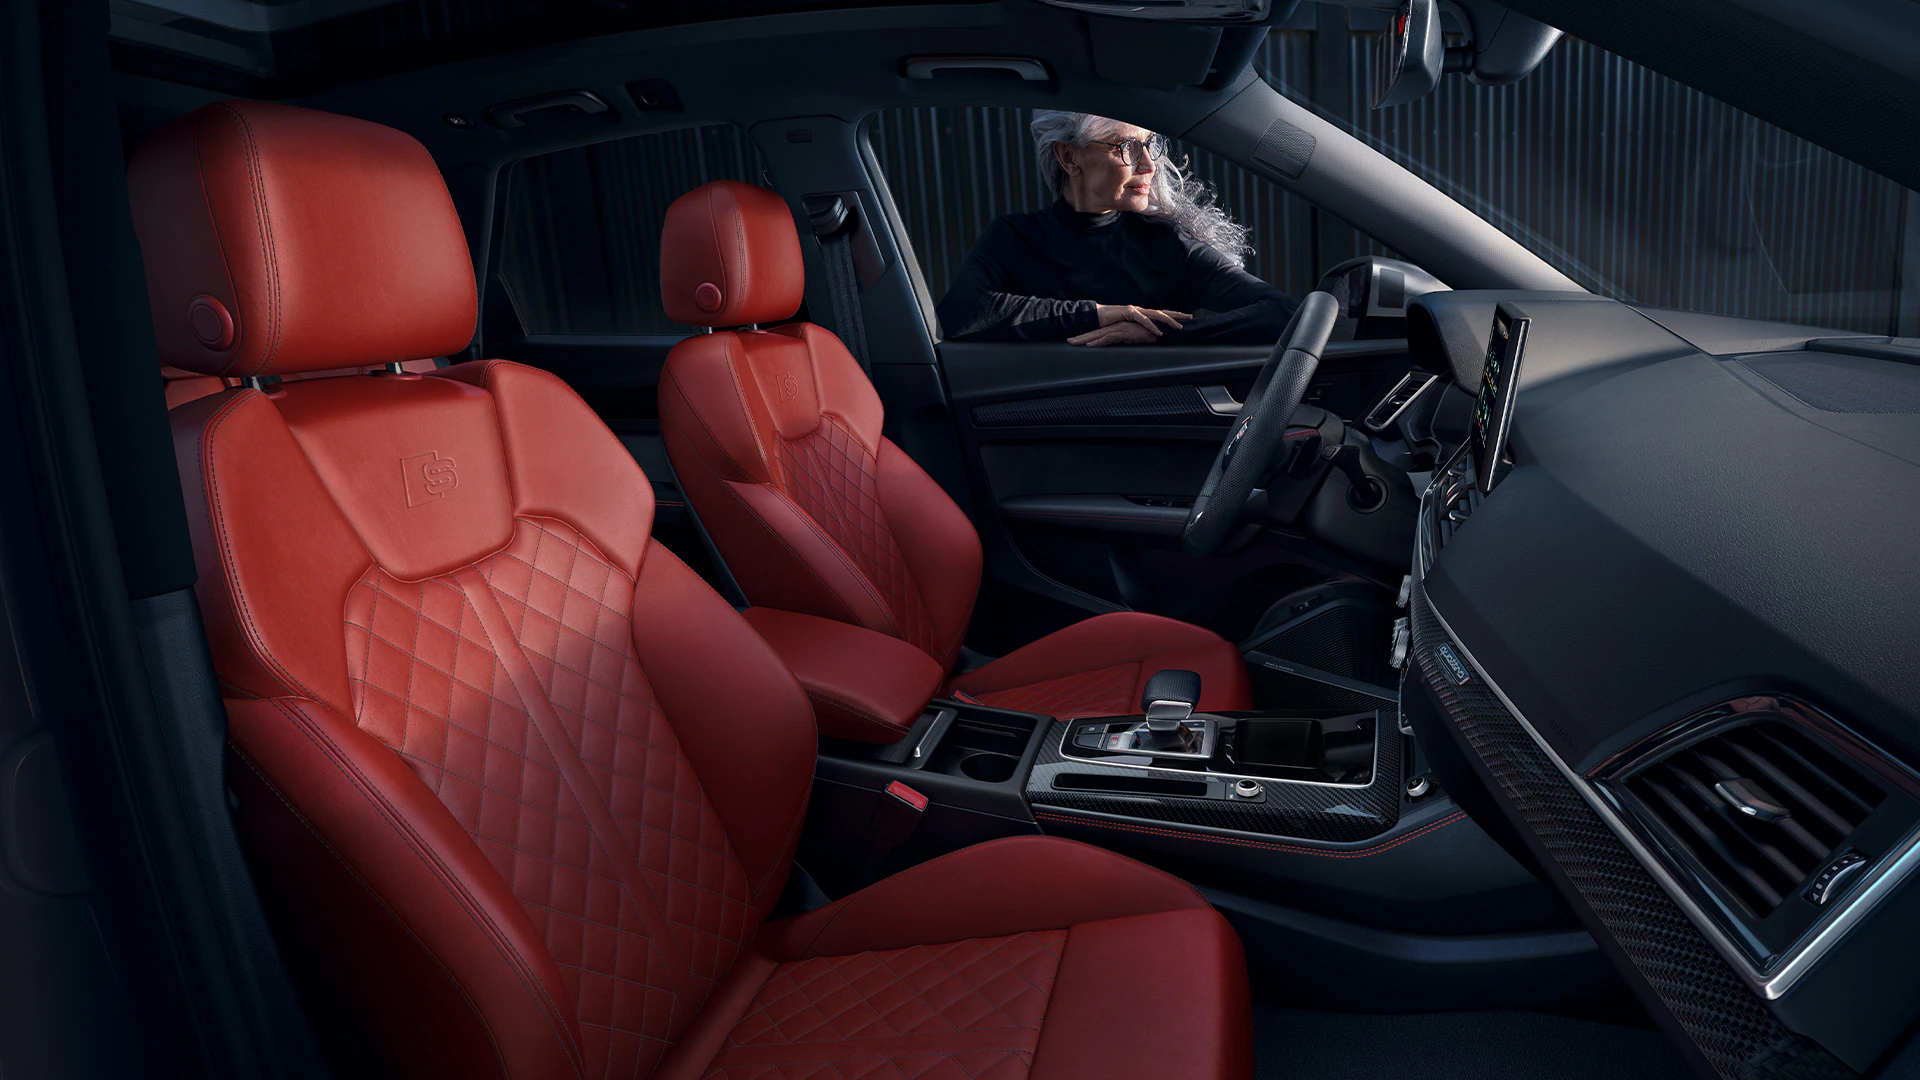 Audi SQ5 Interior Compared to Q5 Interior